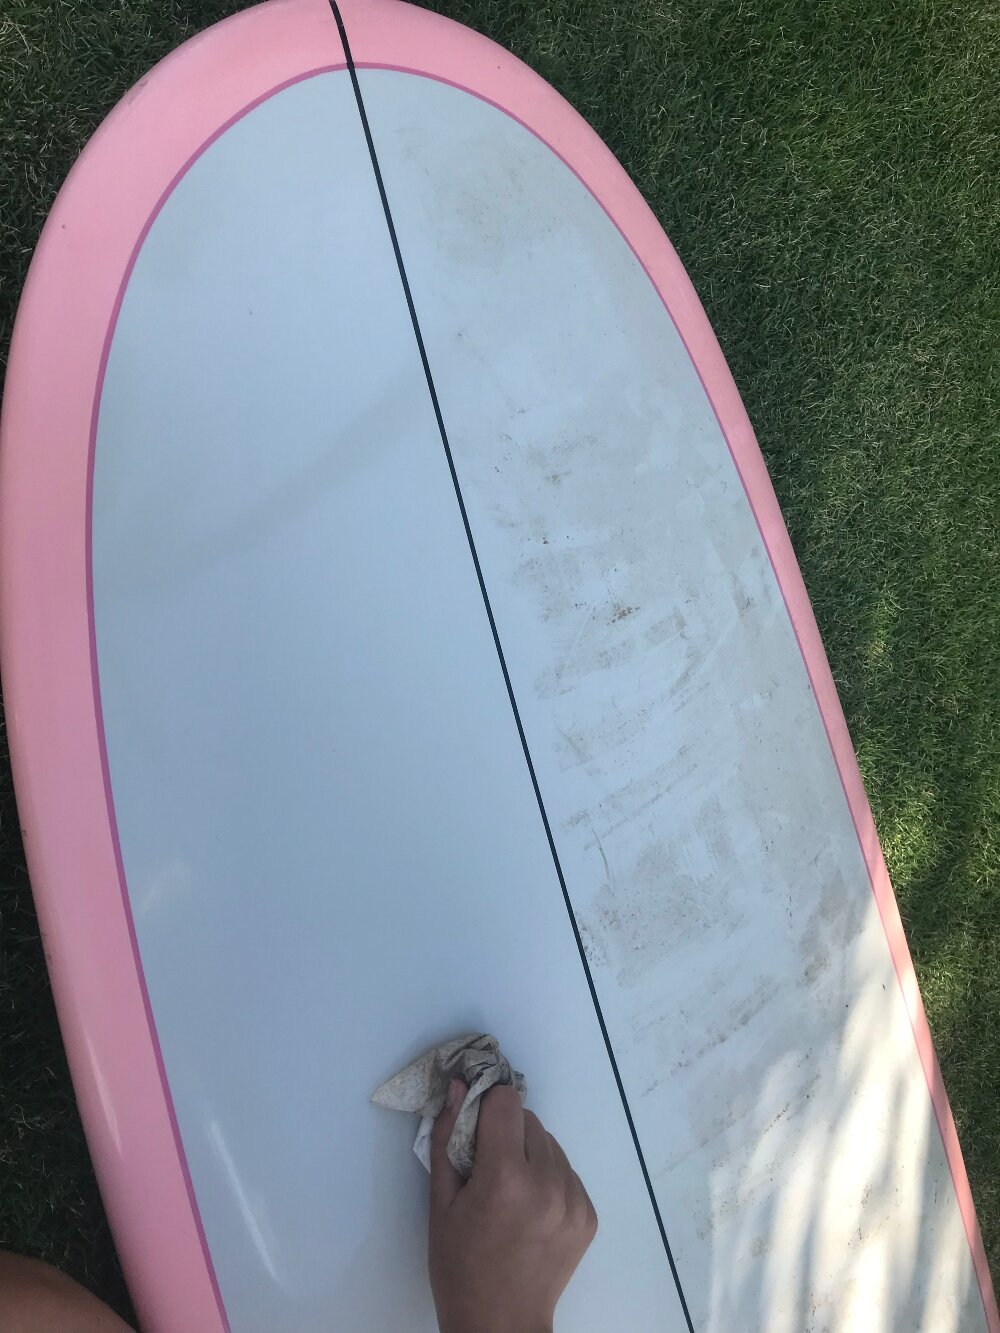 Moms-Goop-cleans-surfboards-hawaii-09.jpg